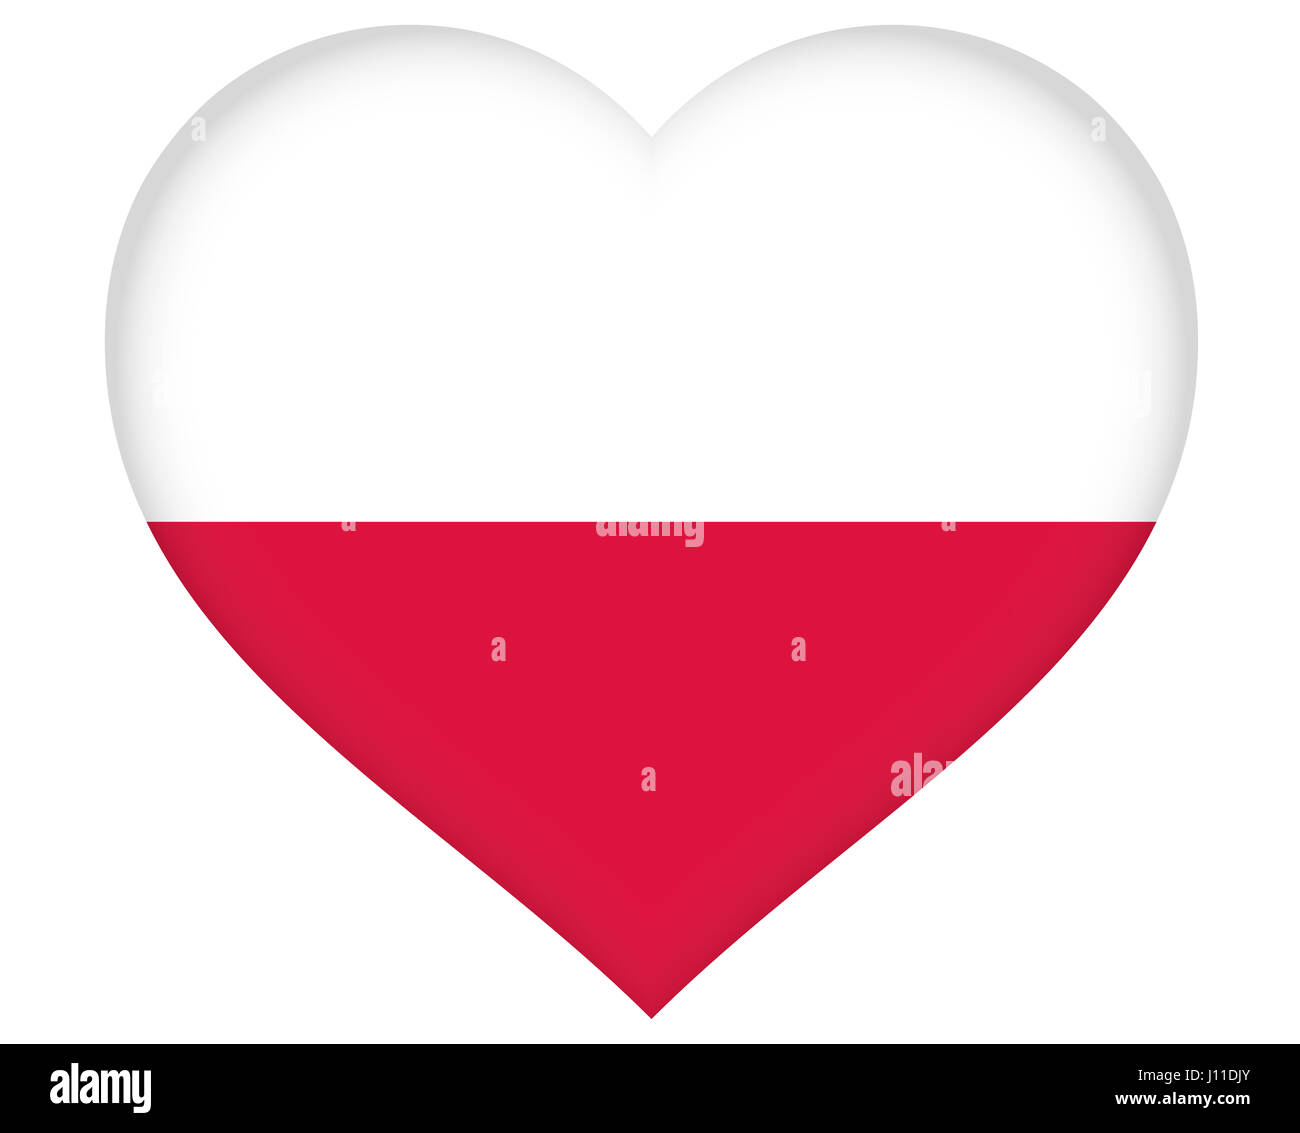 Ilustración de la bandera de Polonia con forma de corazón Foto de stock